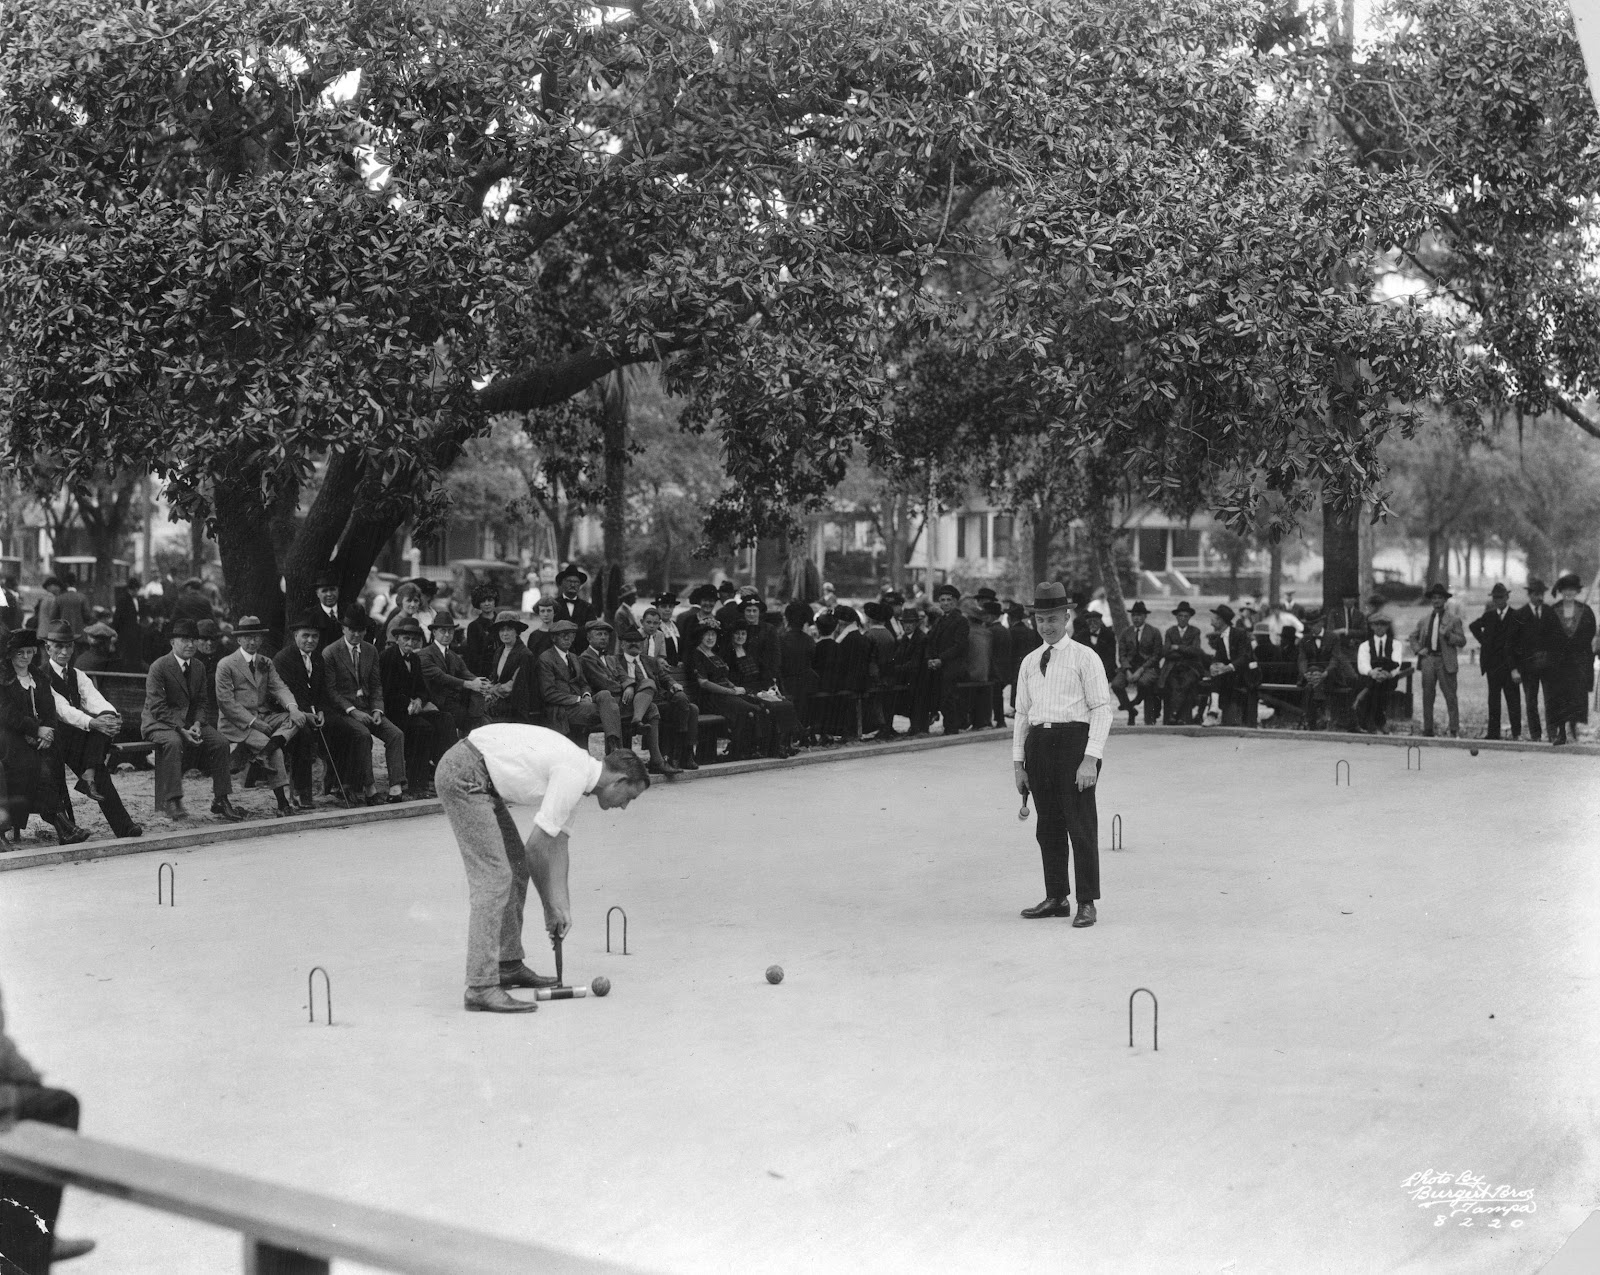 Το ροκέ ήταν αμερικάνικο άθλημα το οποίο συμπεριλήφθηκε μόνο στο πρόγραμμα αγώνων της Ολυμπιάδας στο Σεντ Λούις το 1904